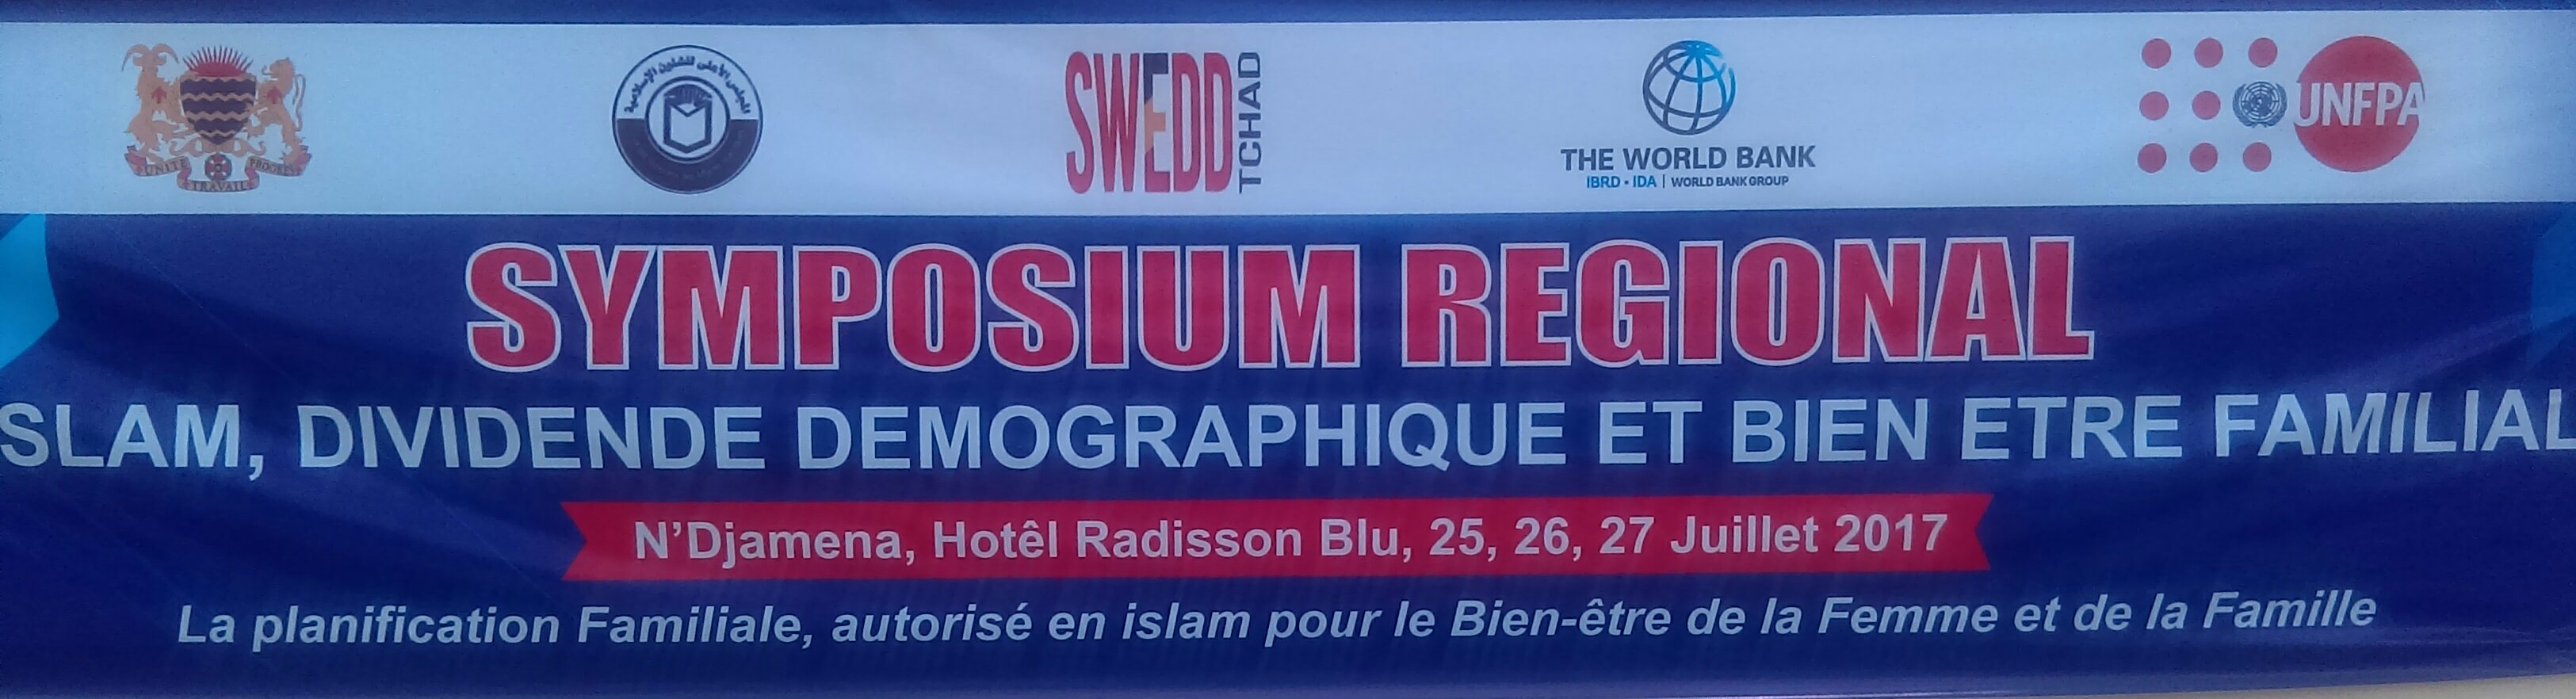 Tchad : N’Djamena abritera du 25 au 27 juillet 2017, un symposium régional sur l’Islam, dividende démographique et bien-être familial